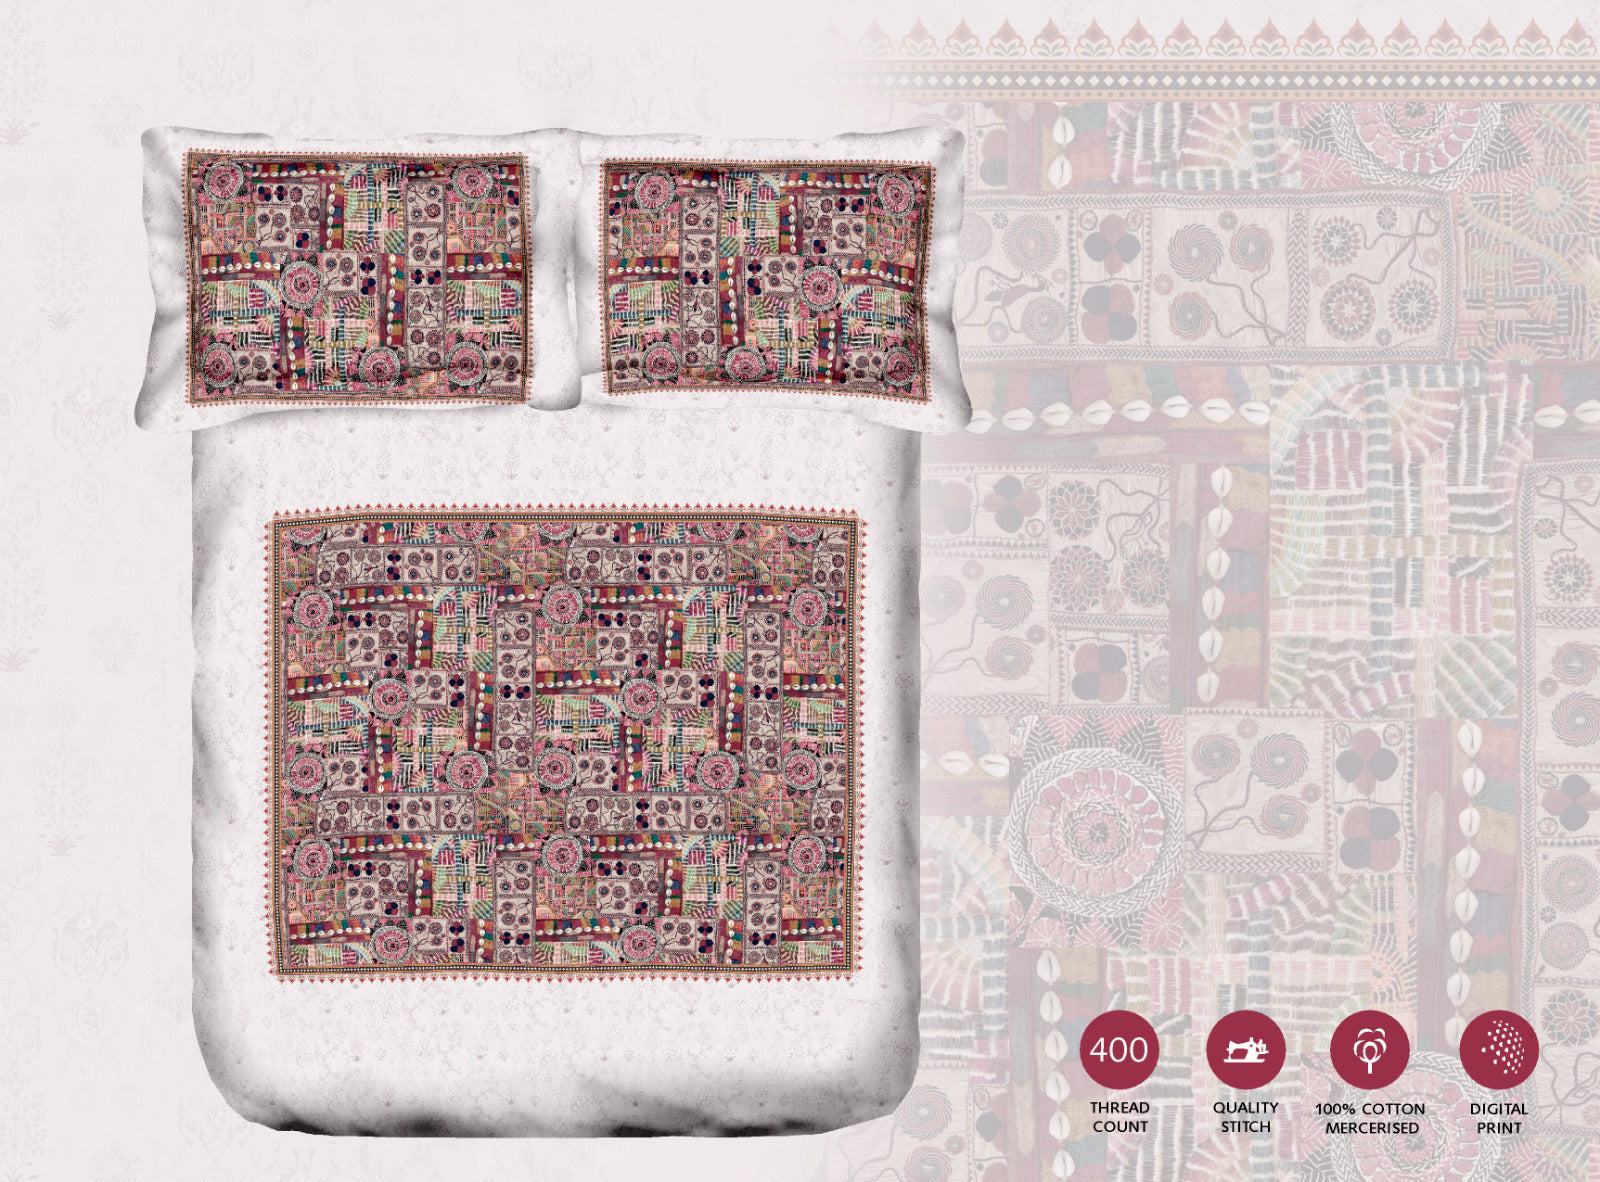 100% Cotton 400 TC King Size Double Bedsheet Digital Print - 274 X 274 CM with 2 Pillow Covers - 3 Pcs Set